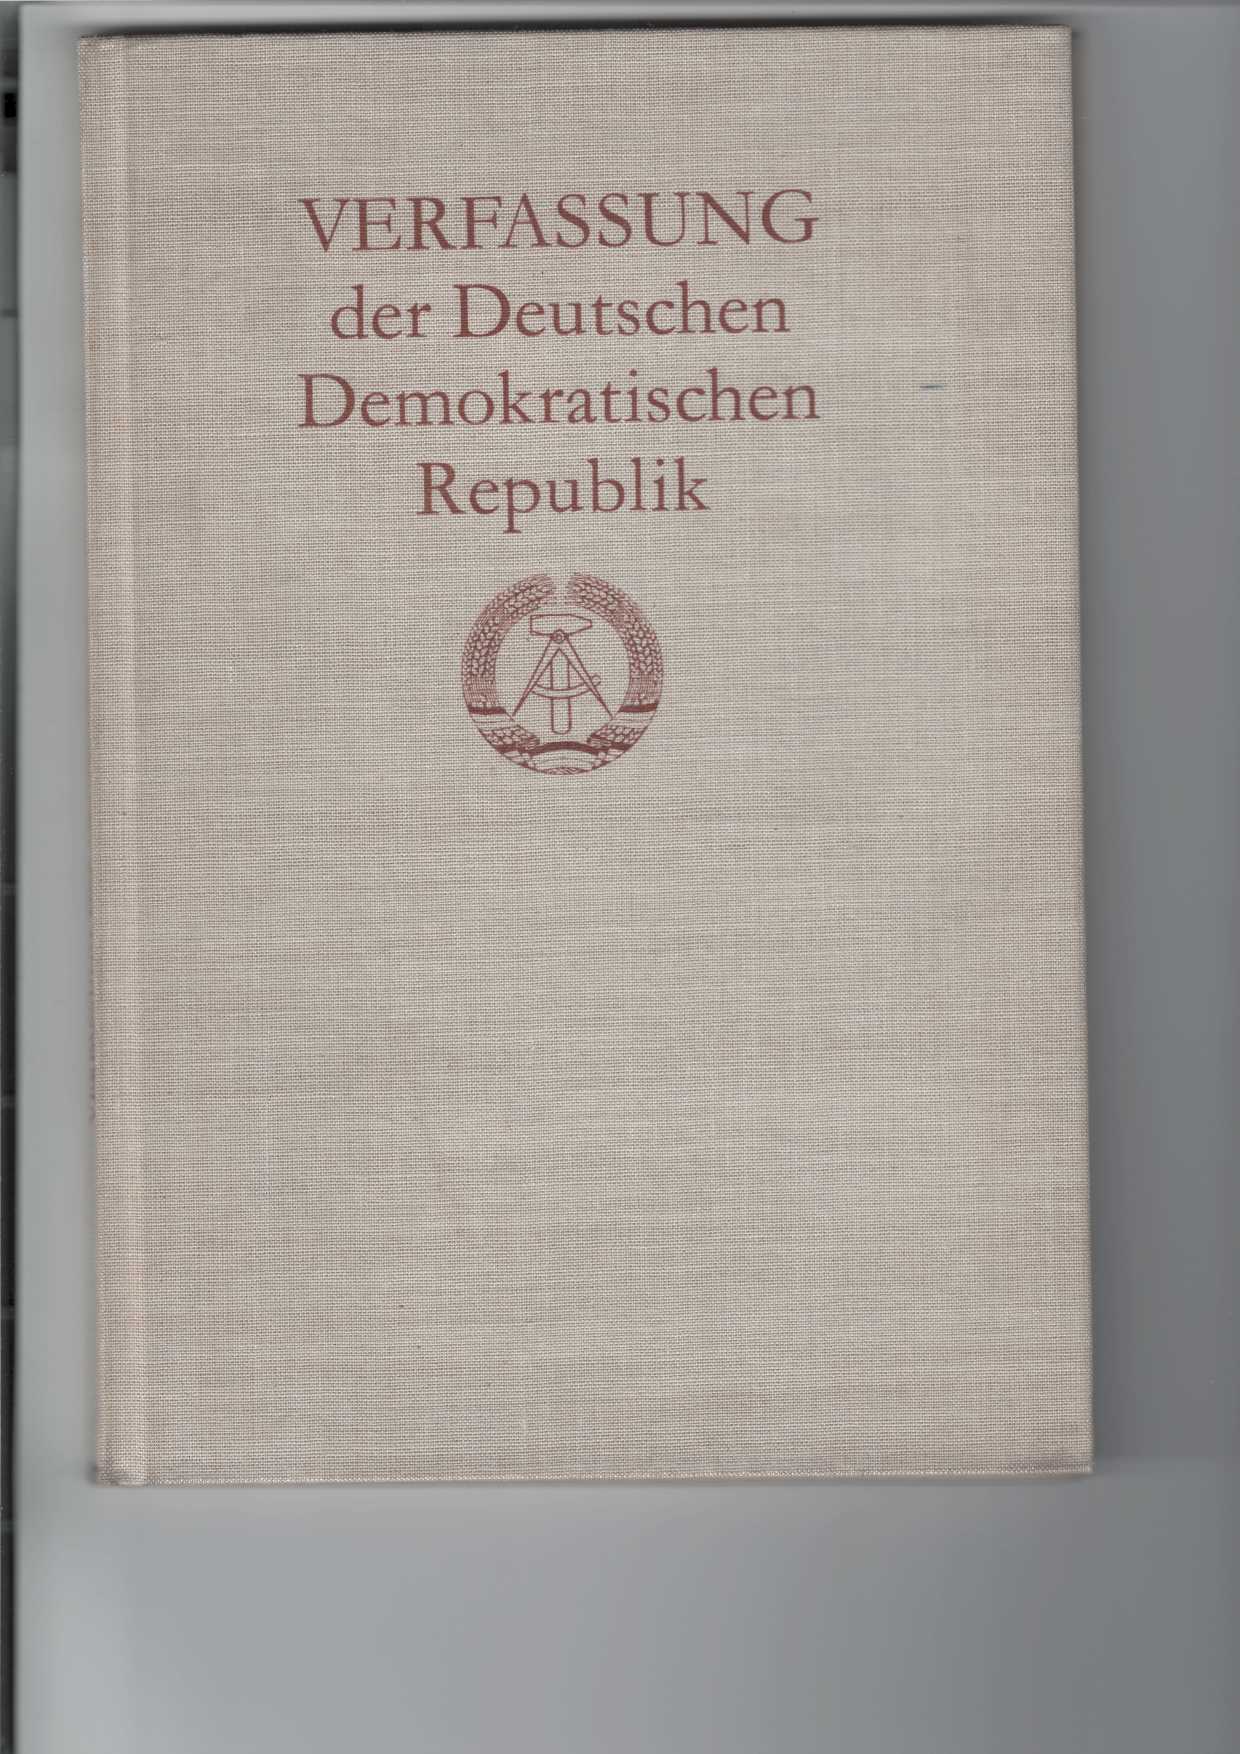   Verfassung der Deutschen Demokratischen Republik 